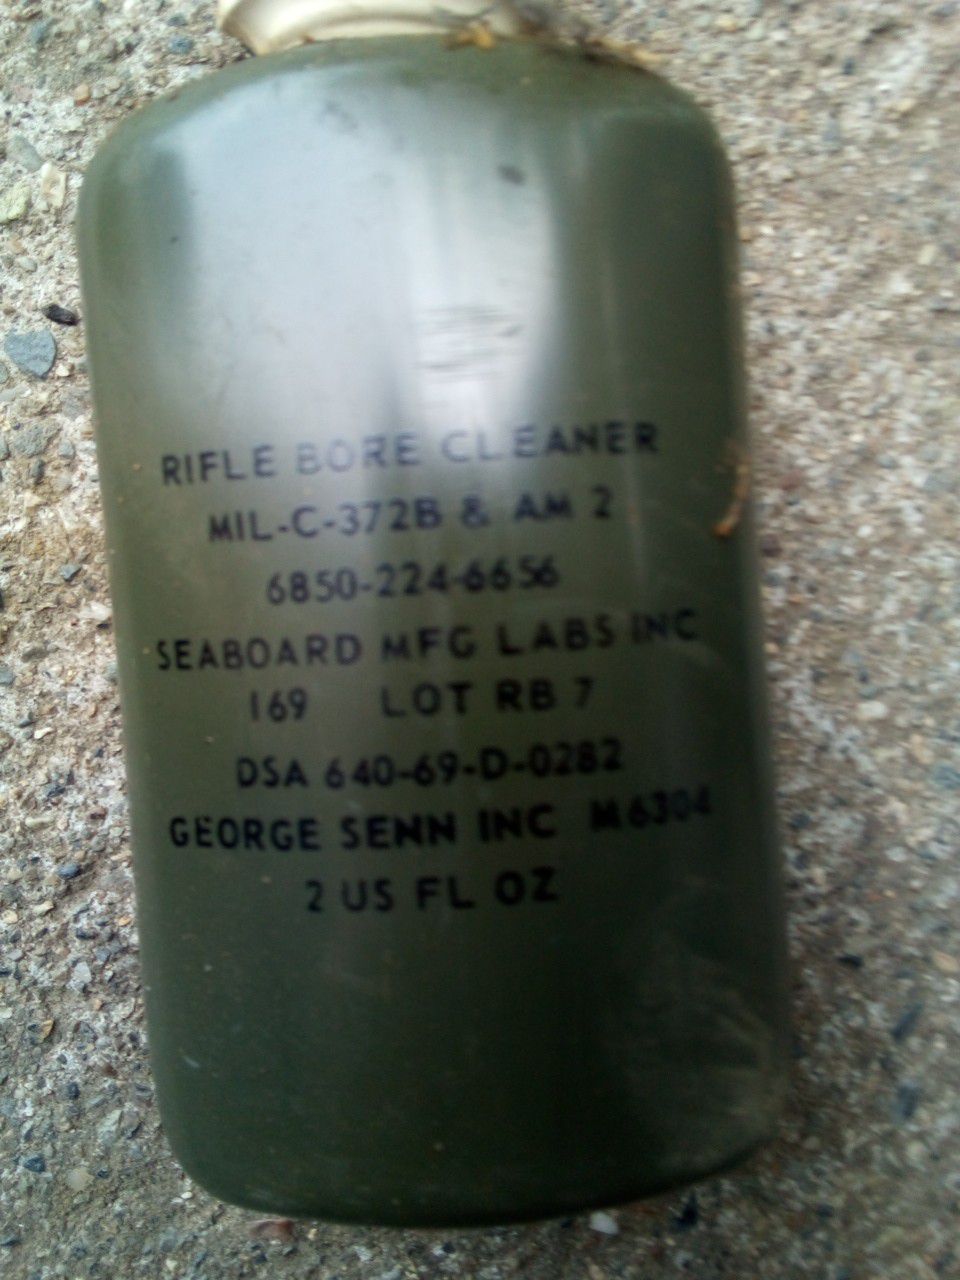 Antique world war 2 rifle cleaner 20 bottles missing still have 30